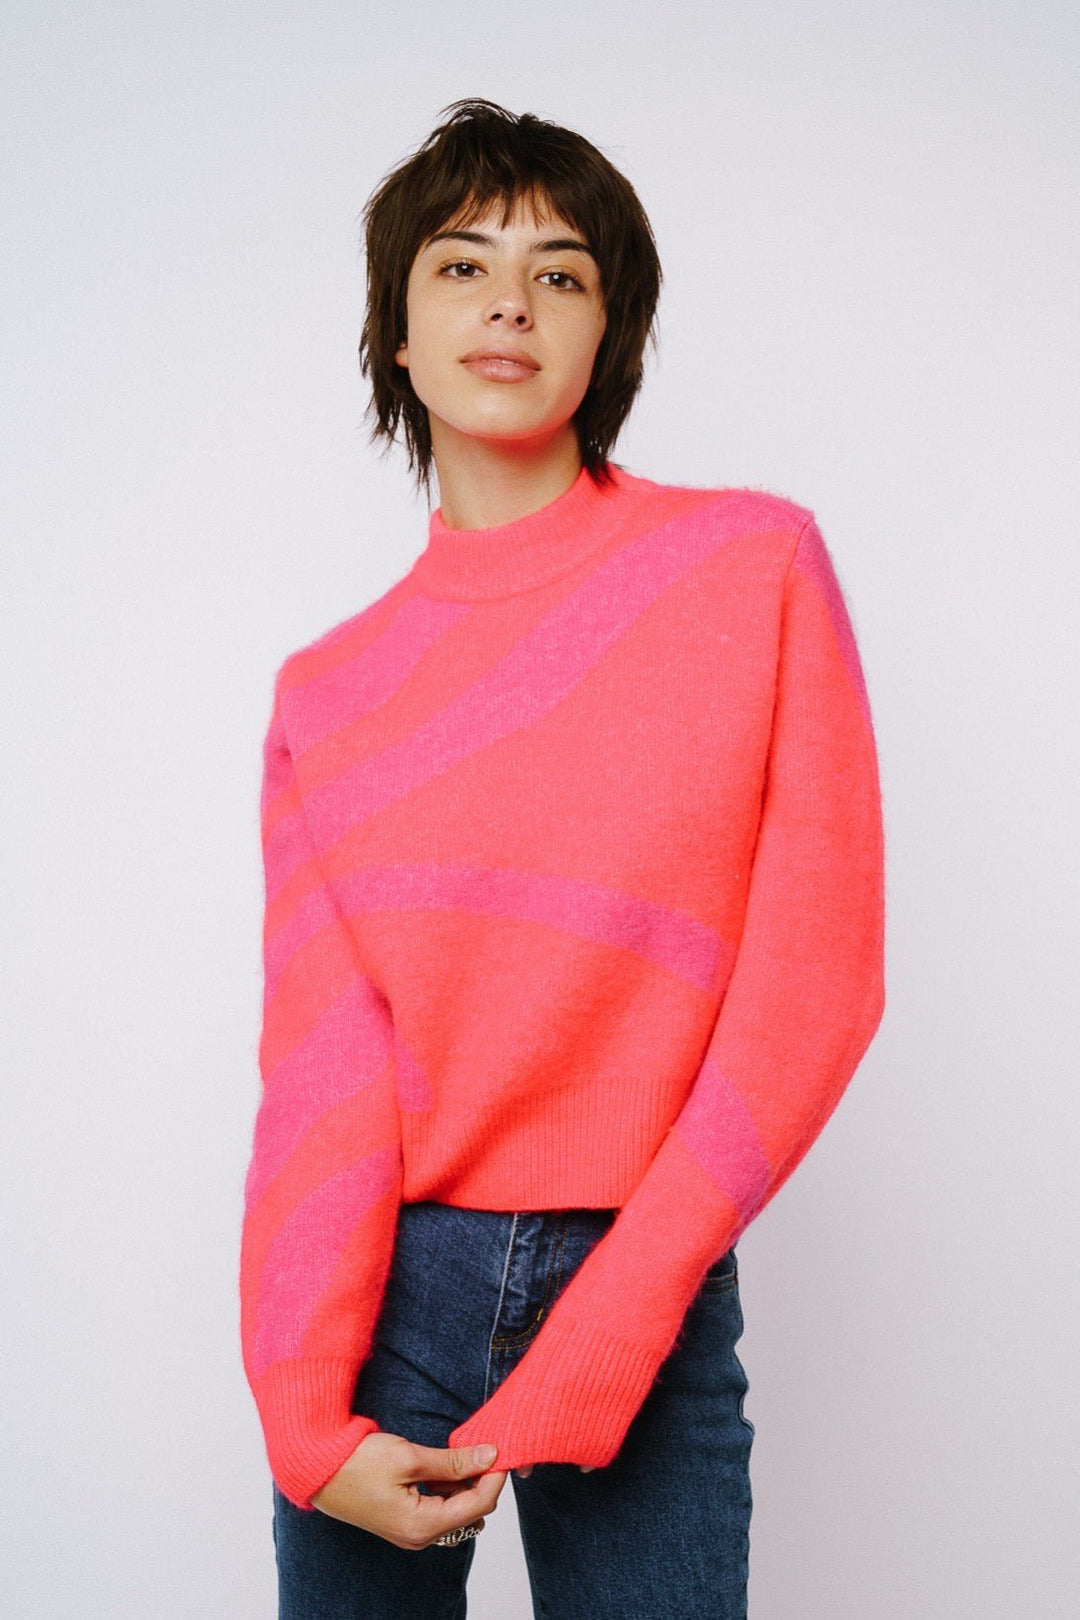 Silka Abstract Pattern Sweater - Lush Lemon - Women's Clothing - Ciebon - 13253